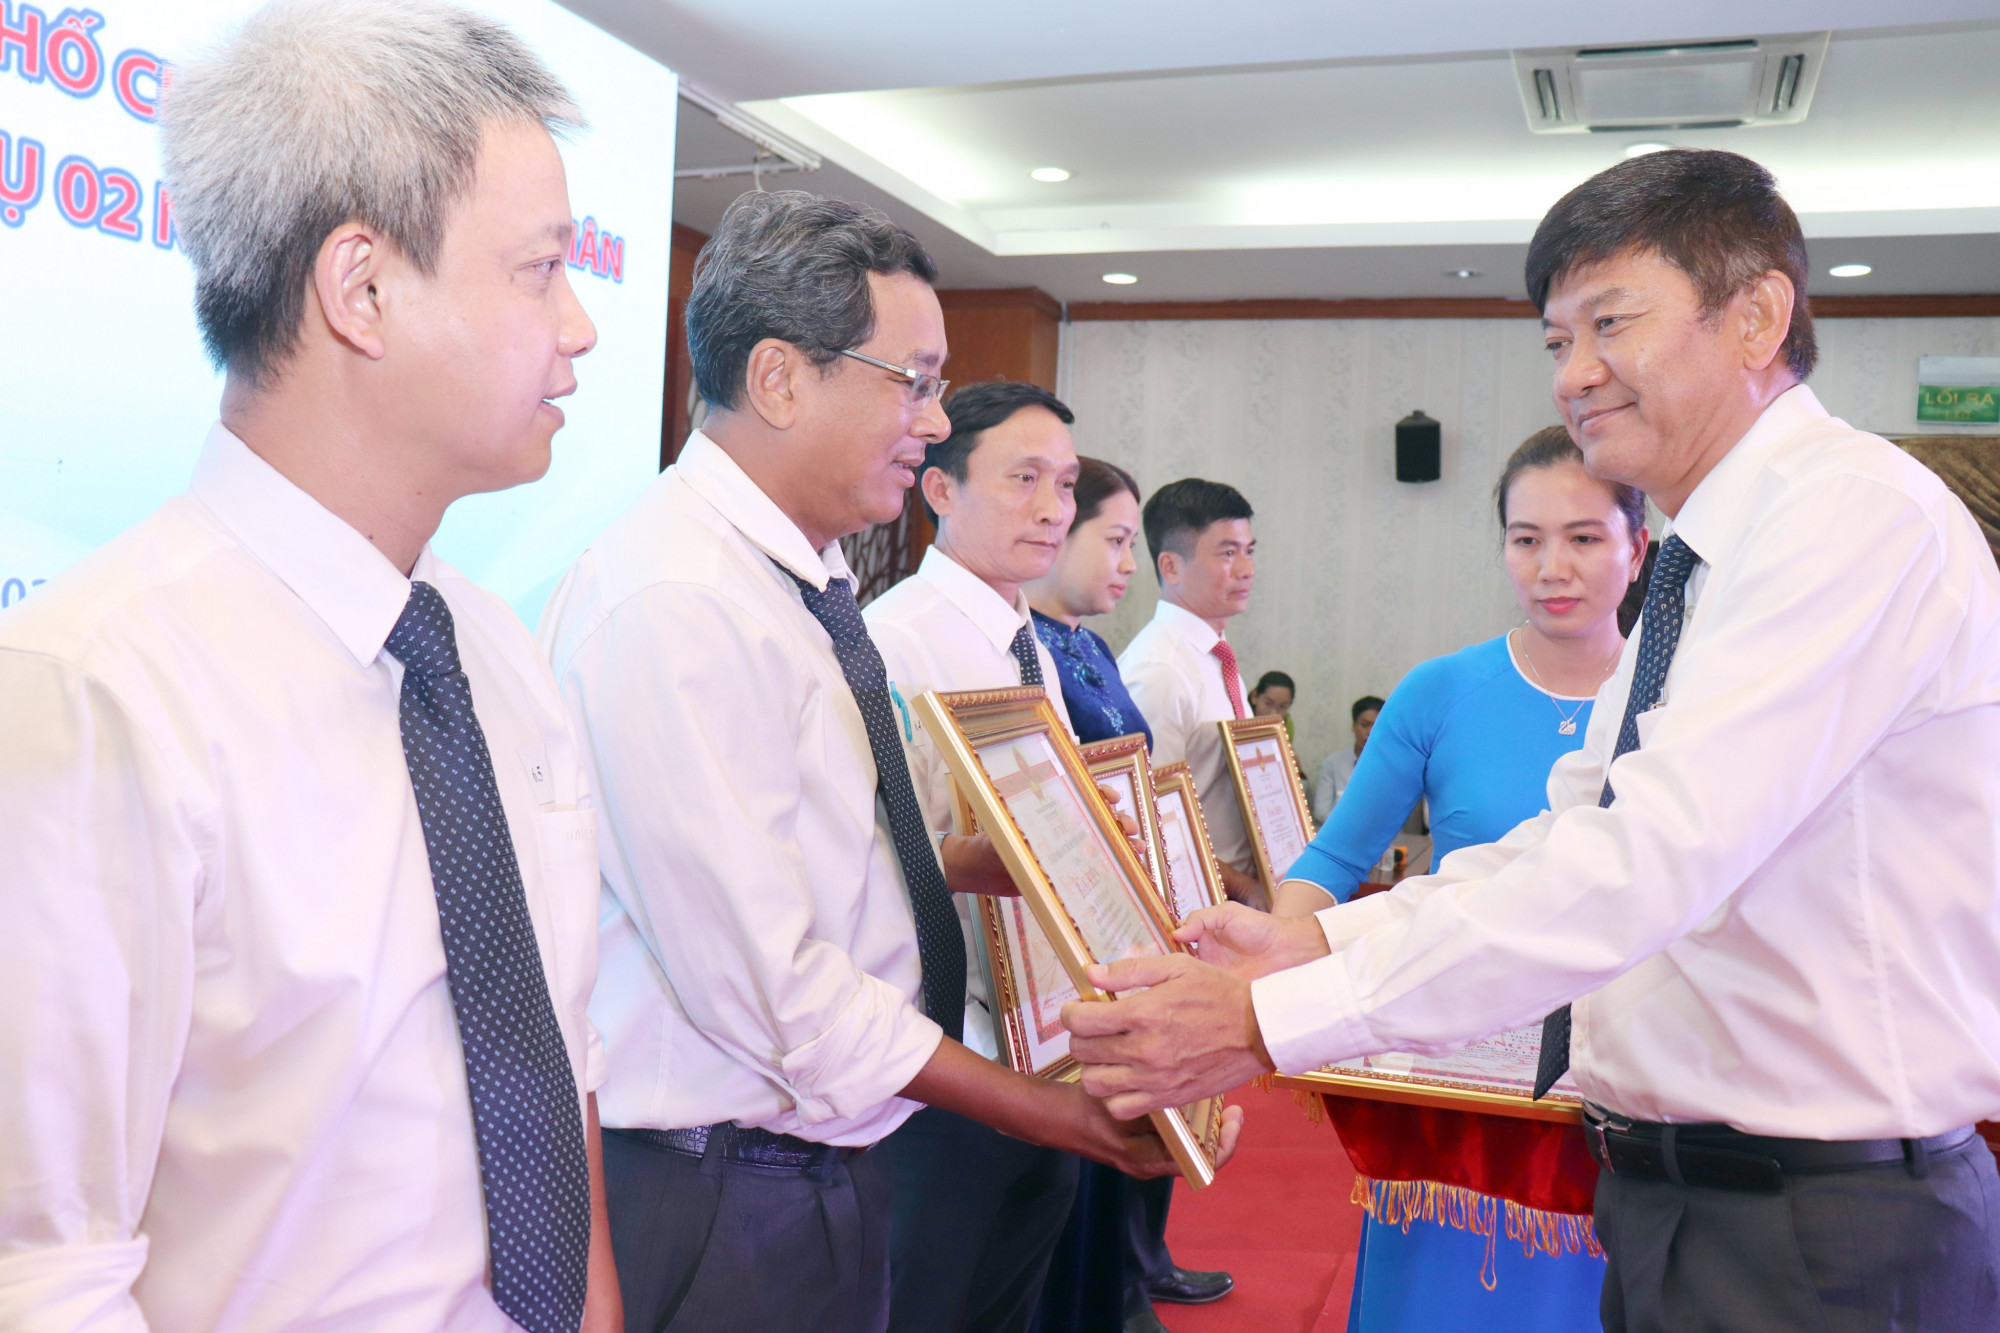 Ông Trần Quang Minh - Phó bí thư Đảng ủy, Tổng Giám đốc Sawaco tặng bằng khen cho các đơn vị, cá nhân hoàn thành nhiệm vụ xuất sắc - Ảnh: Sawaco